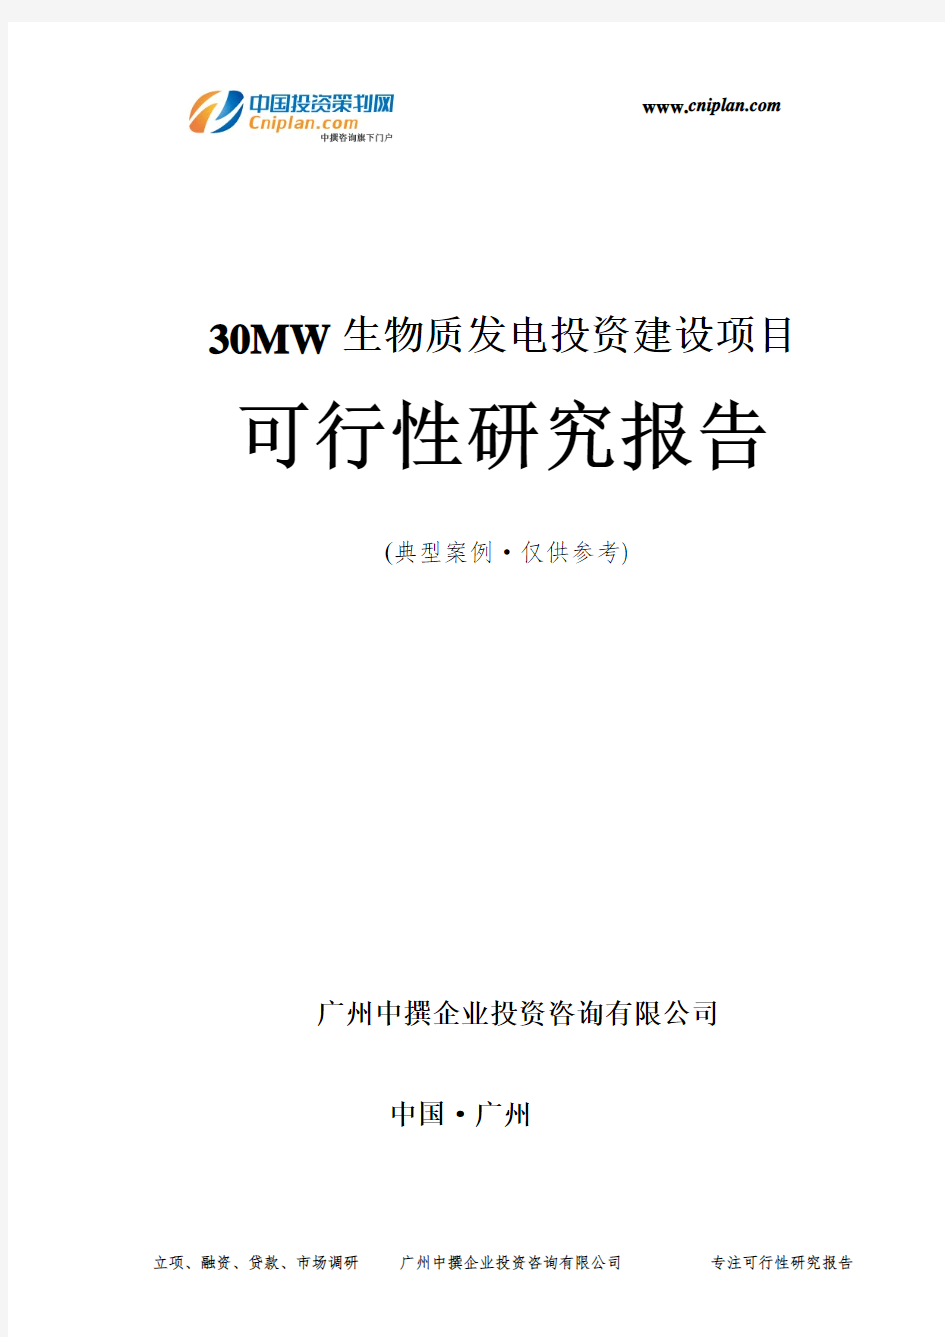 30MW生物质发电投资建设项目可行性研究报告-广州中撰咨询